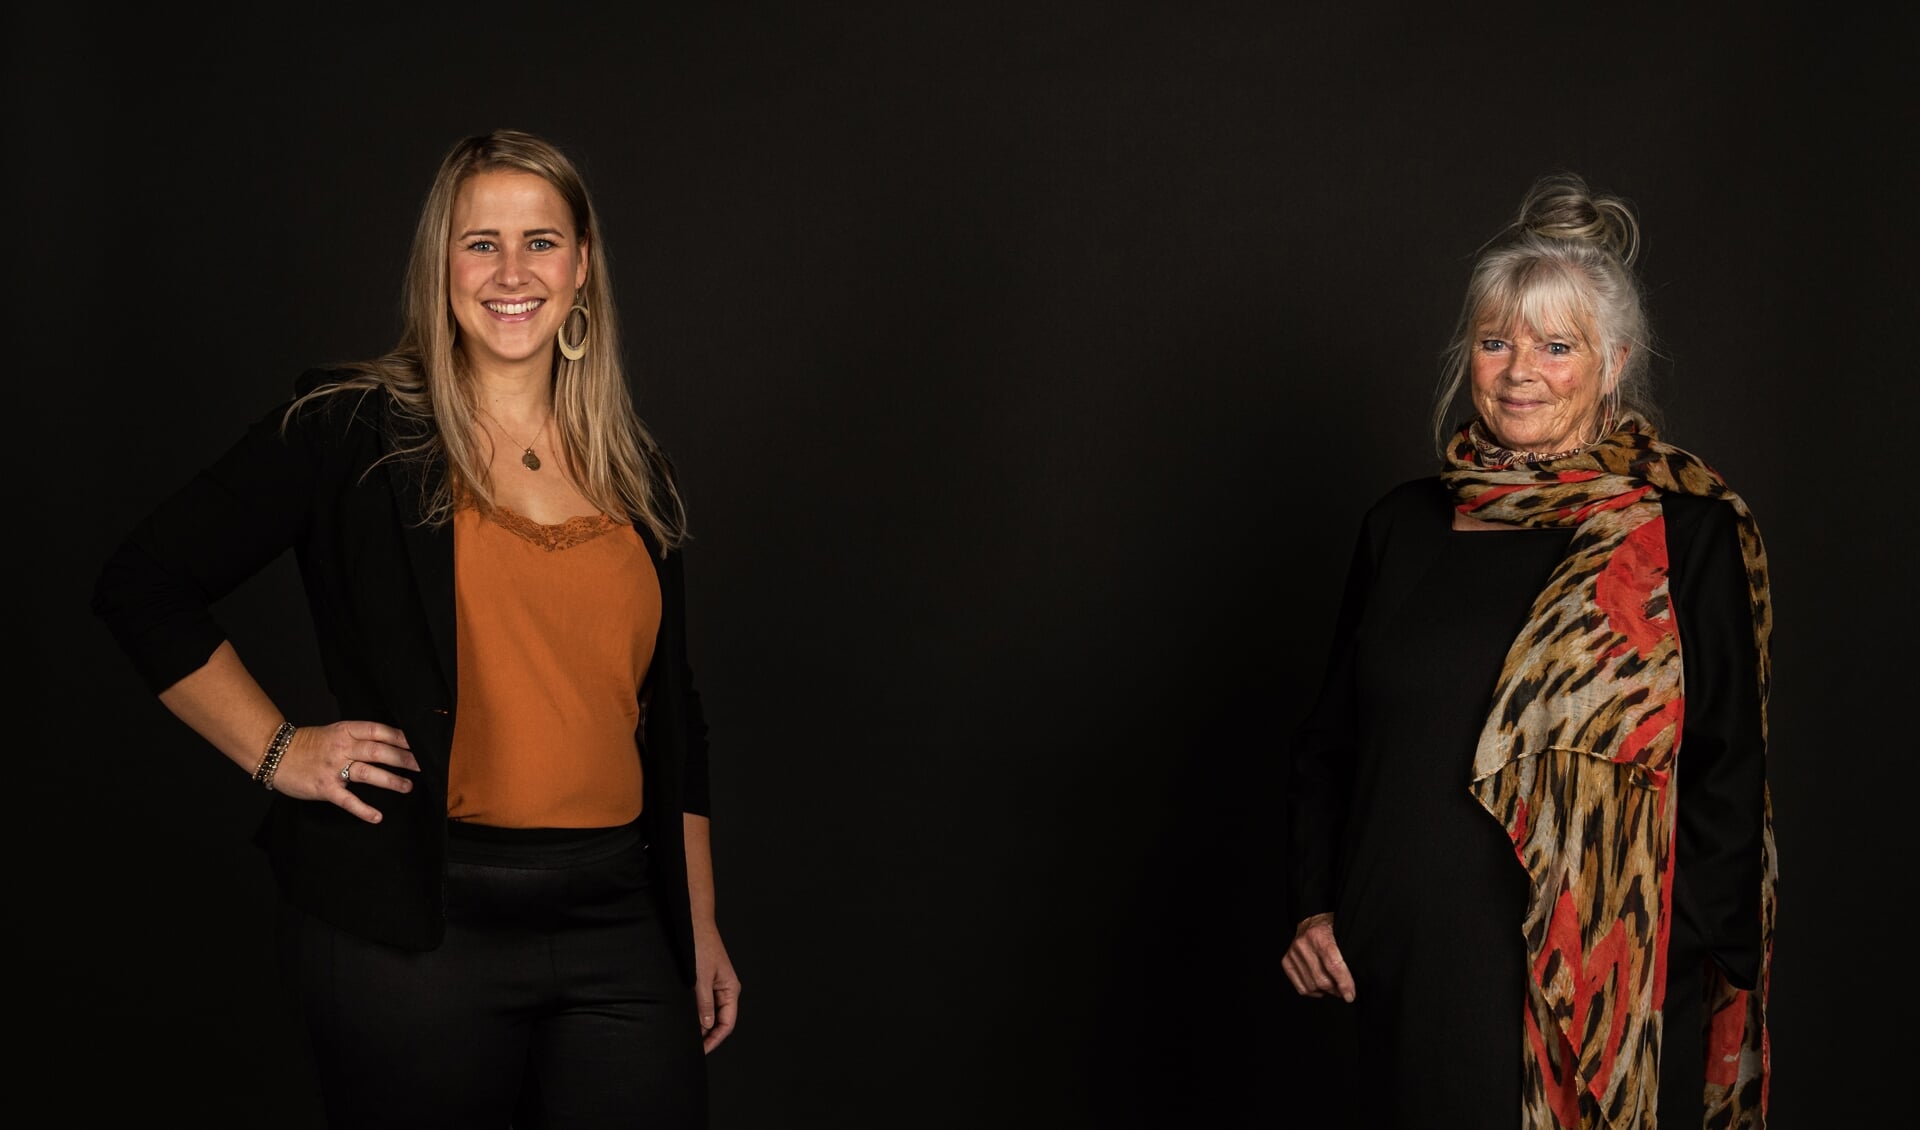 • Kirsten van Oudheusden-Hooijkaas van Het Trouwkabinet met haar coach trouwambtenaar Marijke Meijlink.